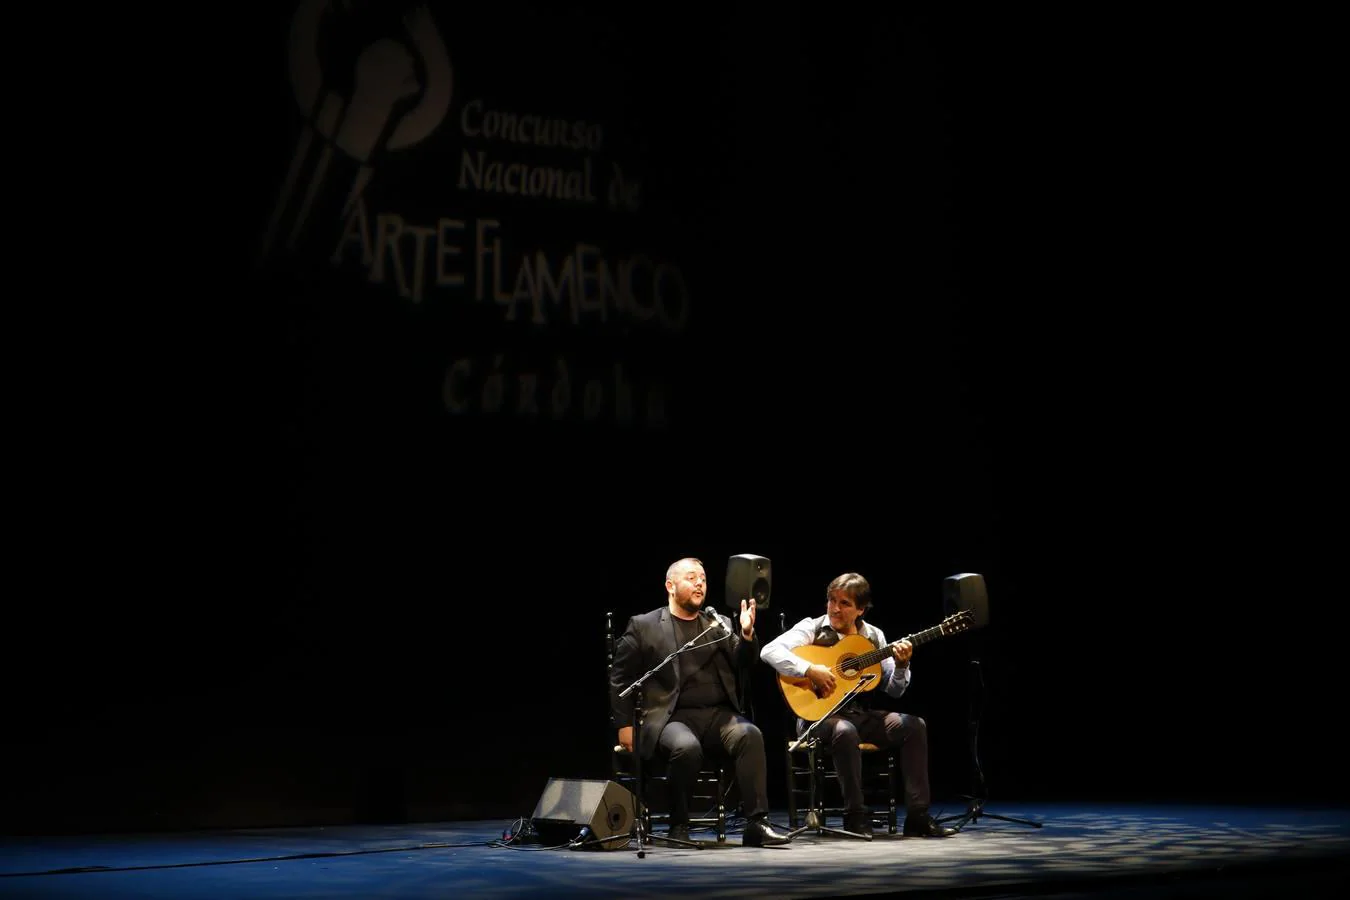 Los finalistas del Concurso Nacional de Arte Flamenco de Córdoba, en imágenes